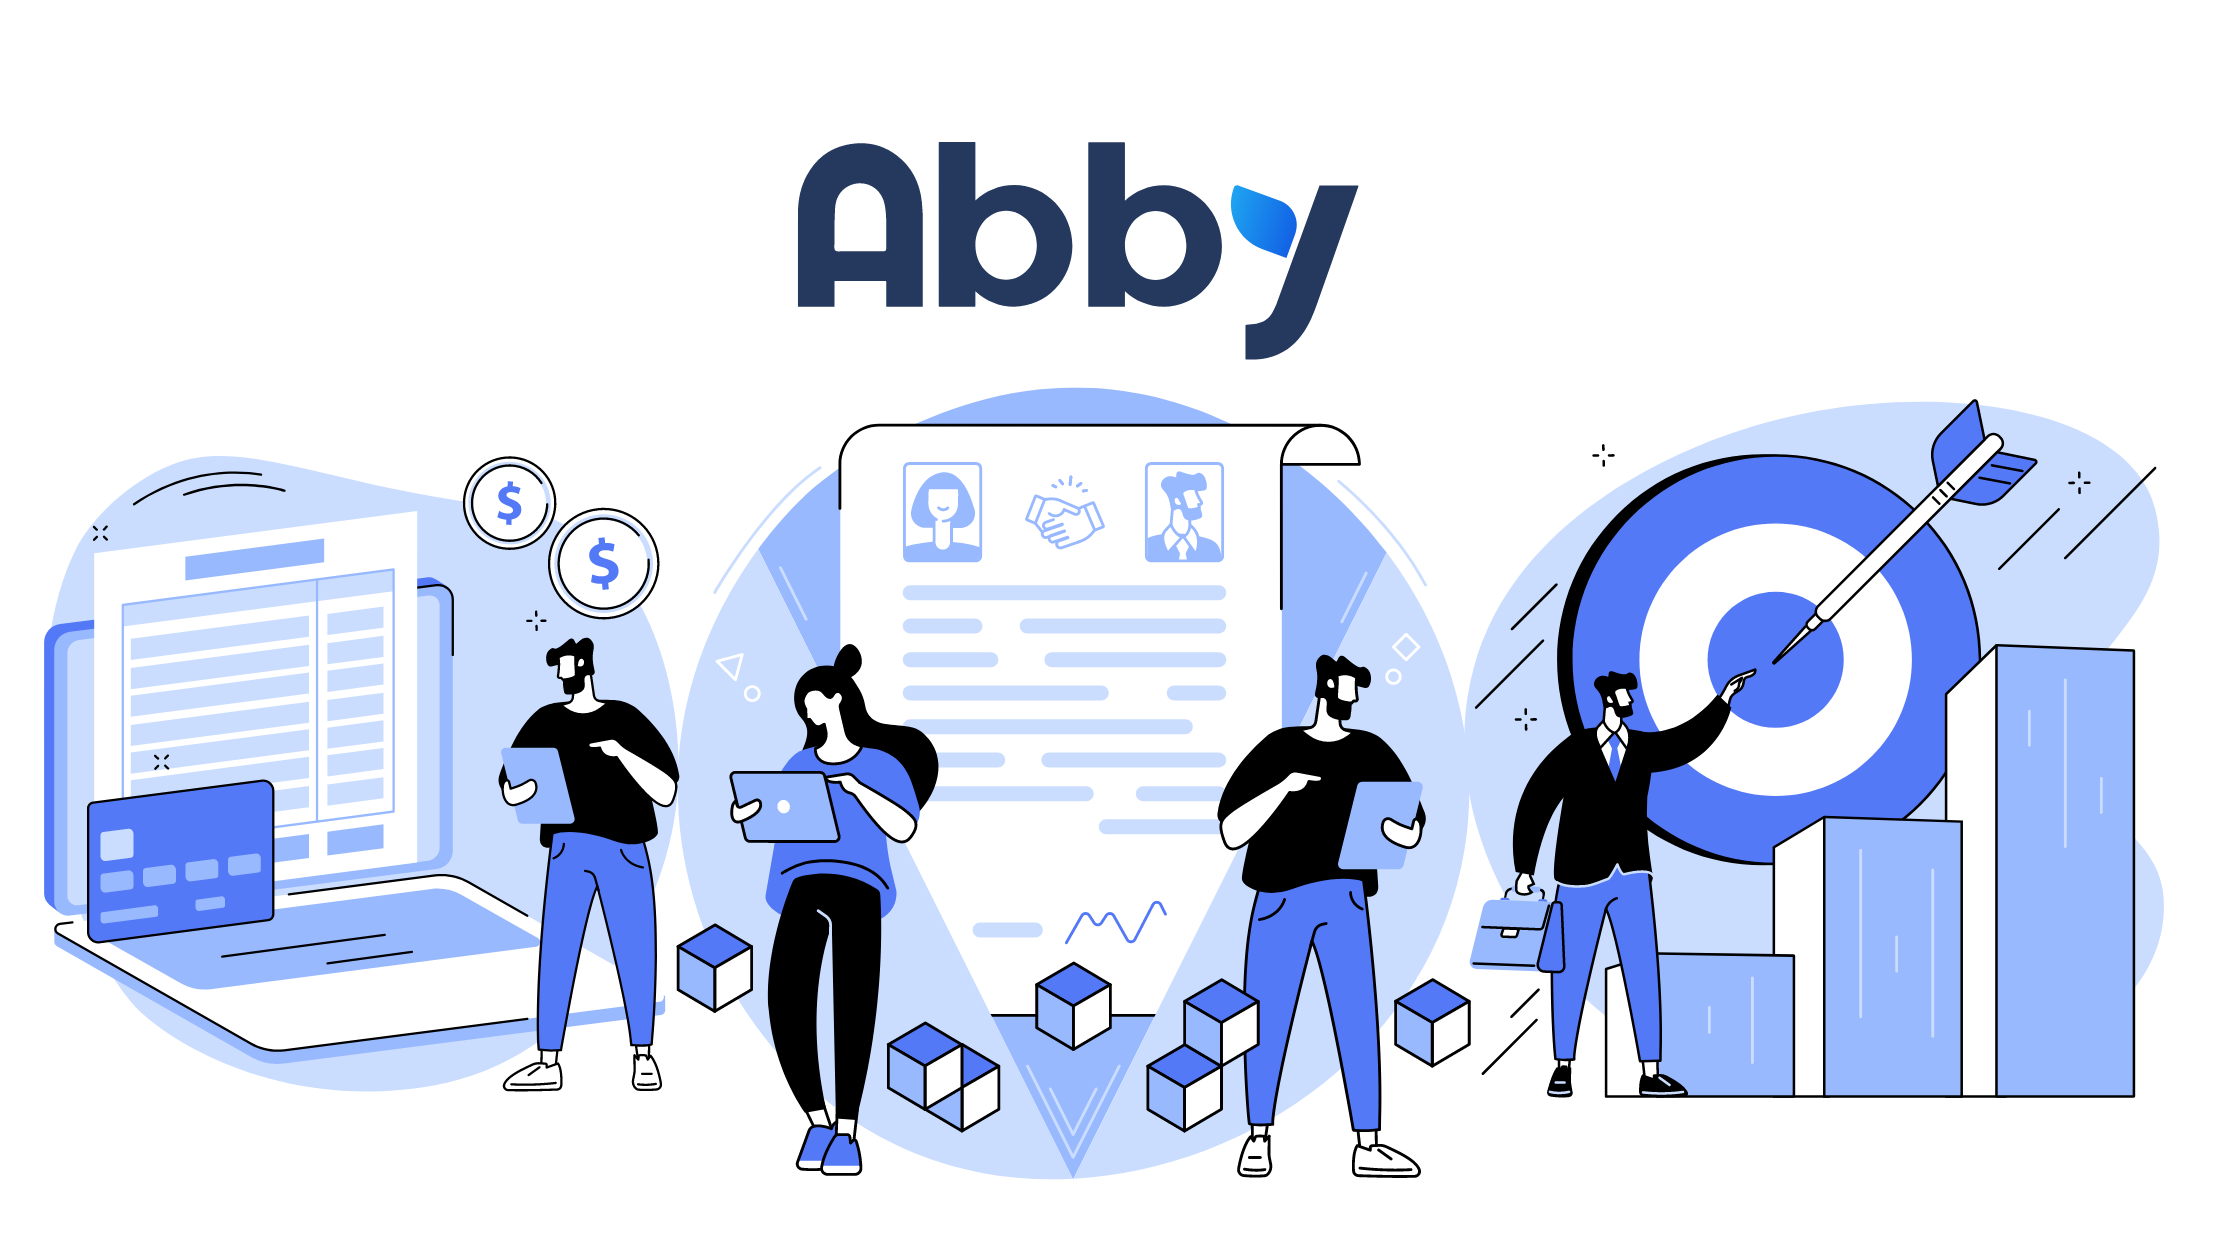 Bannière avec le logo Abby